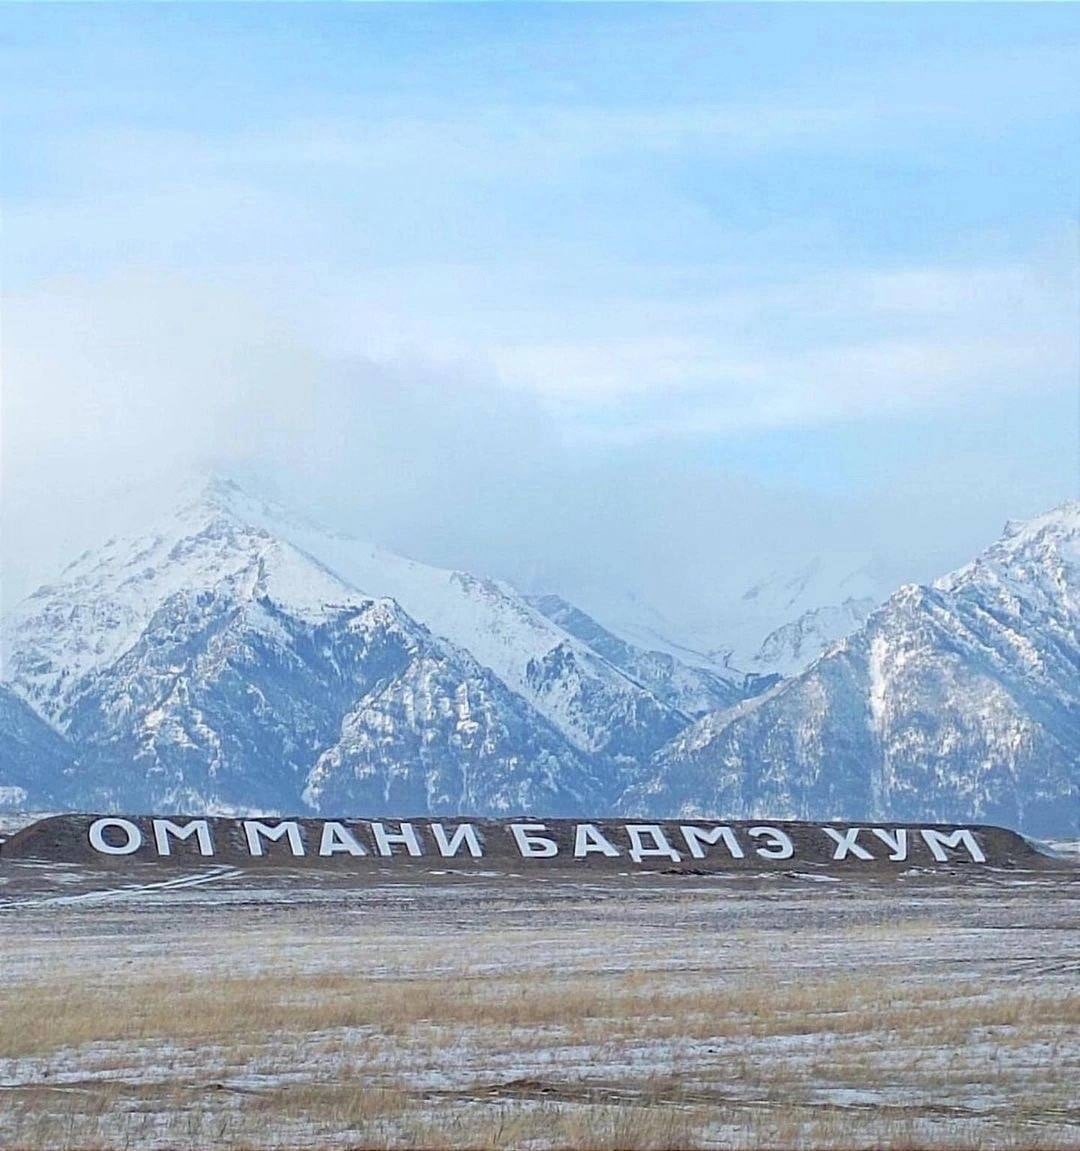 Фото В Баргузинском районе Бурятии на горе появилась буддийская мантра